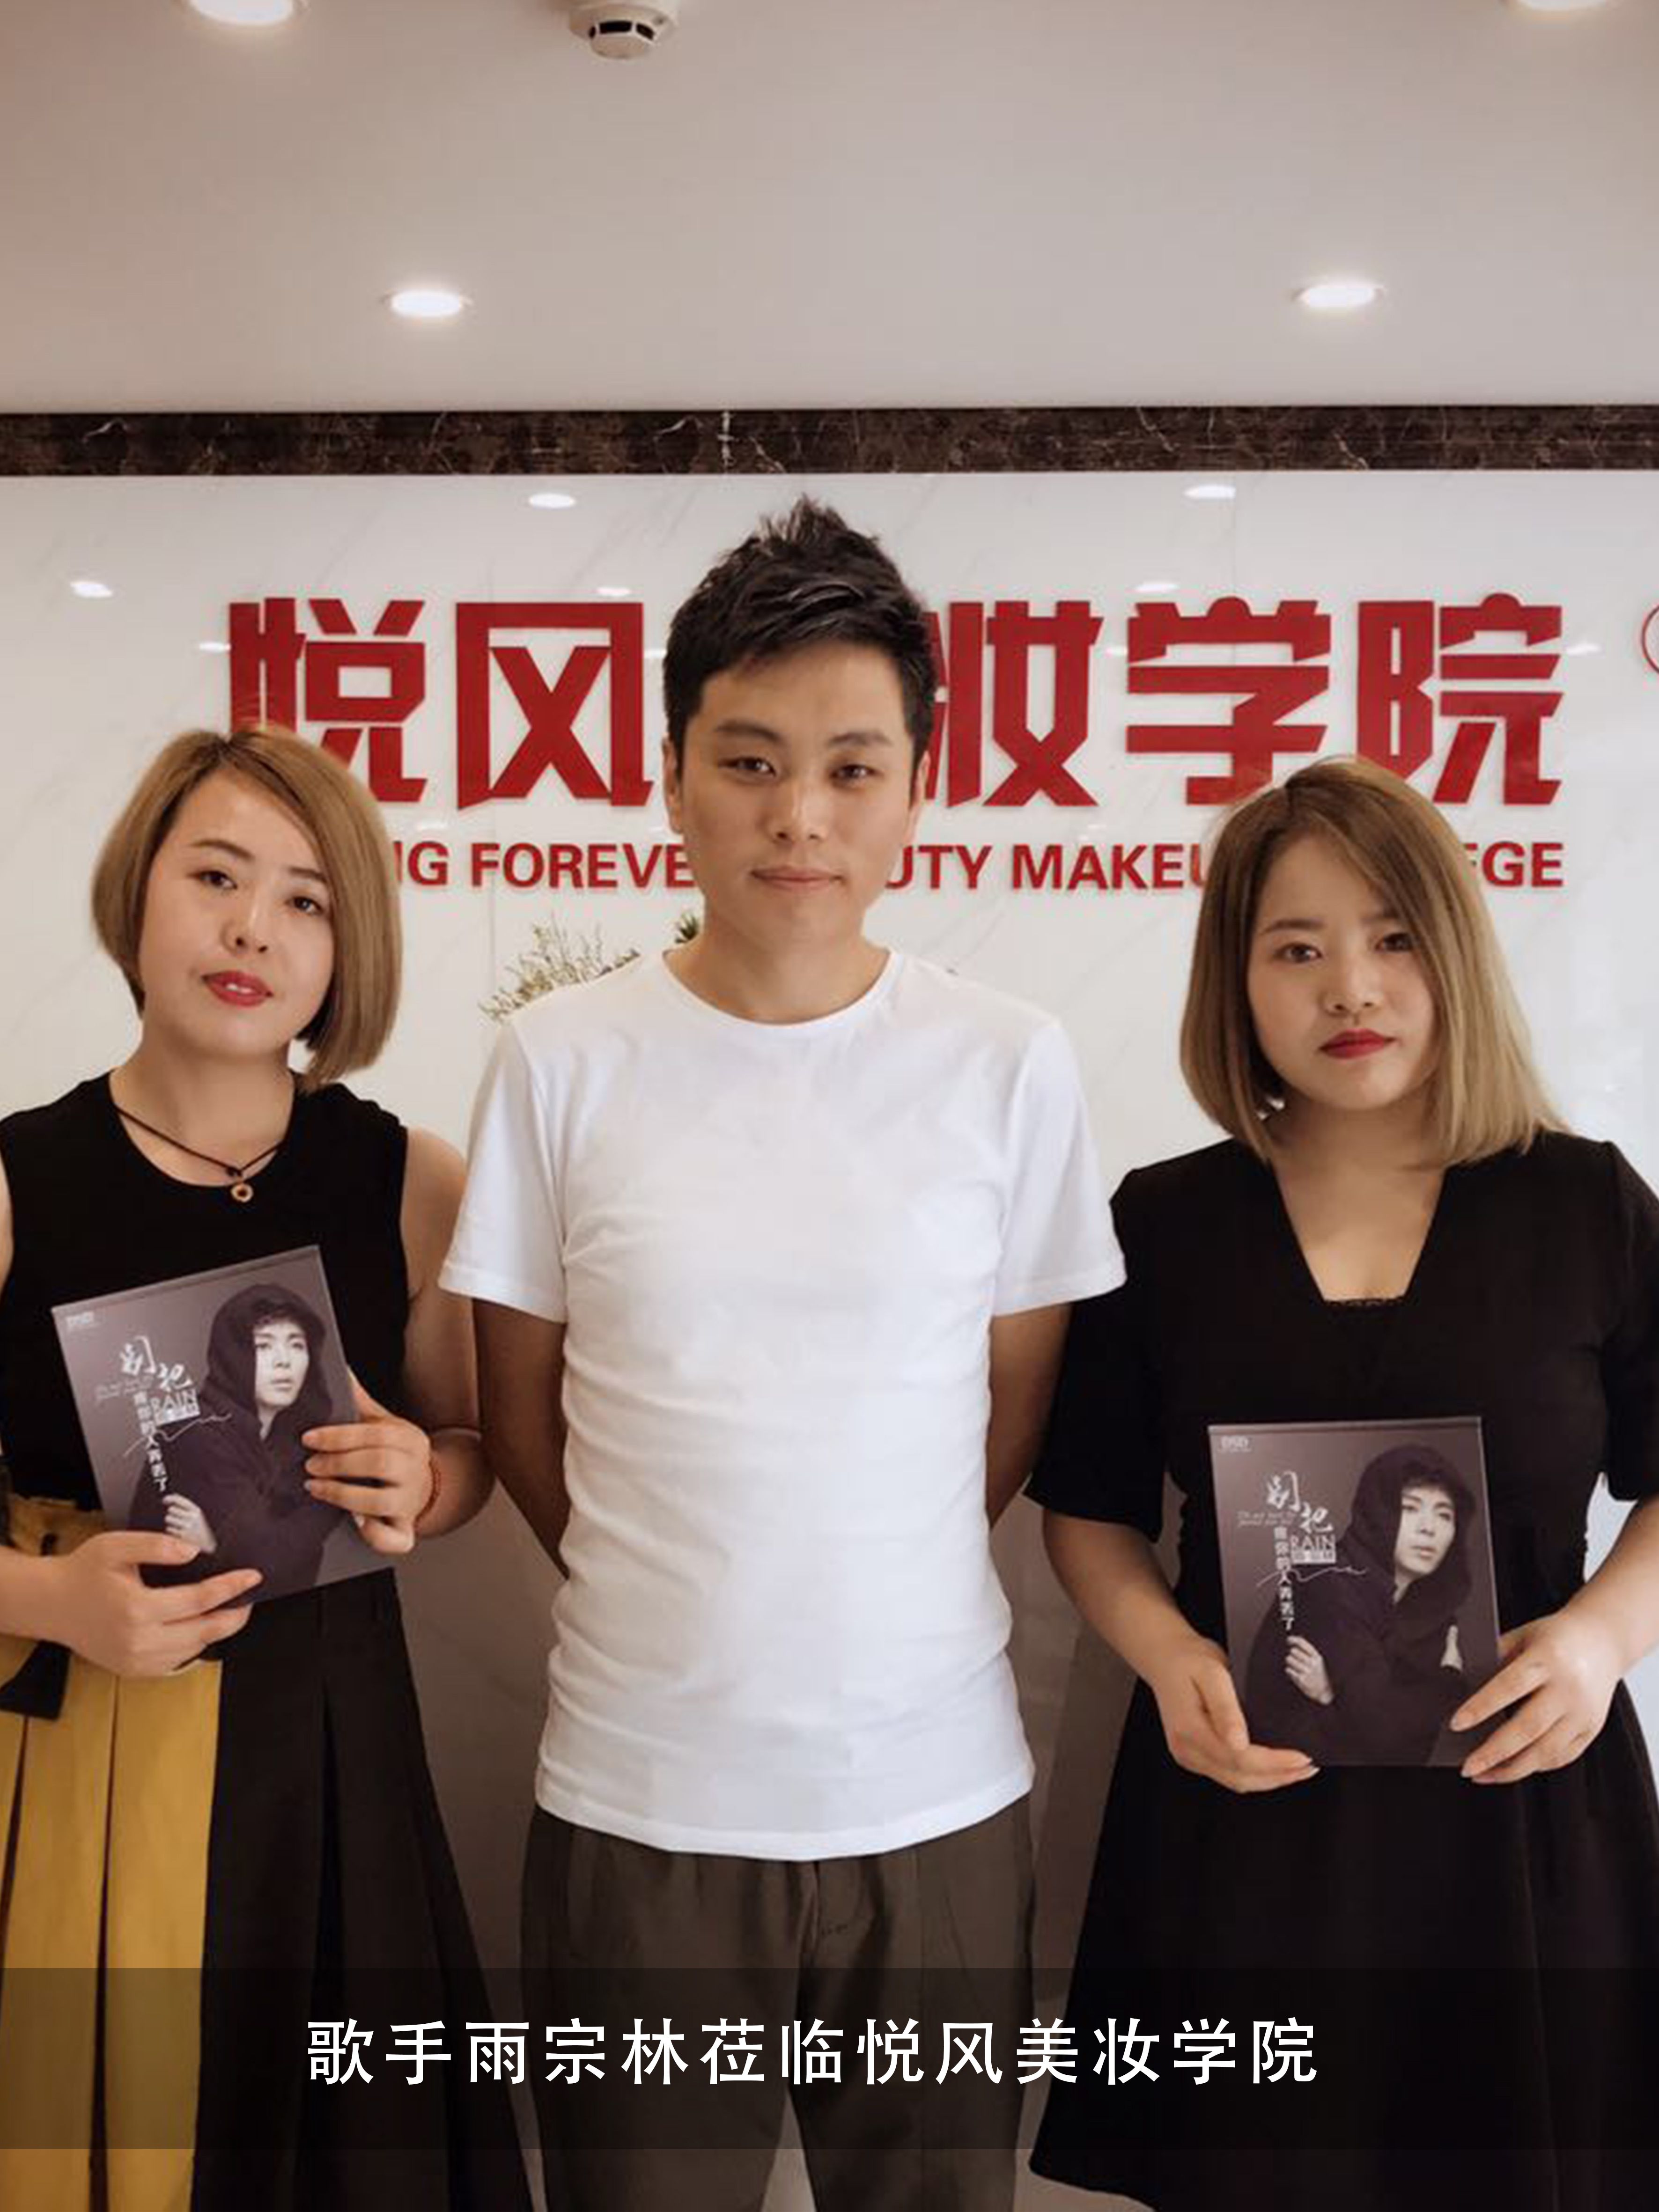 歌手雨宗林悦风美妆学院,并给悦风美妆老师送上自己的签名专辑